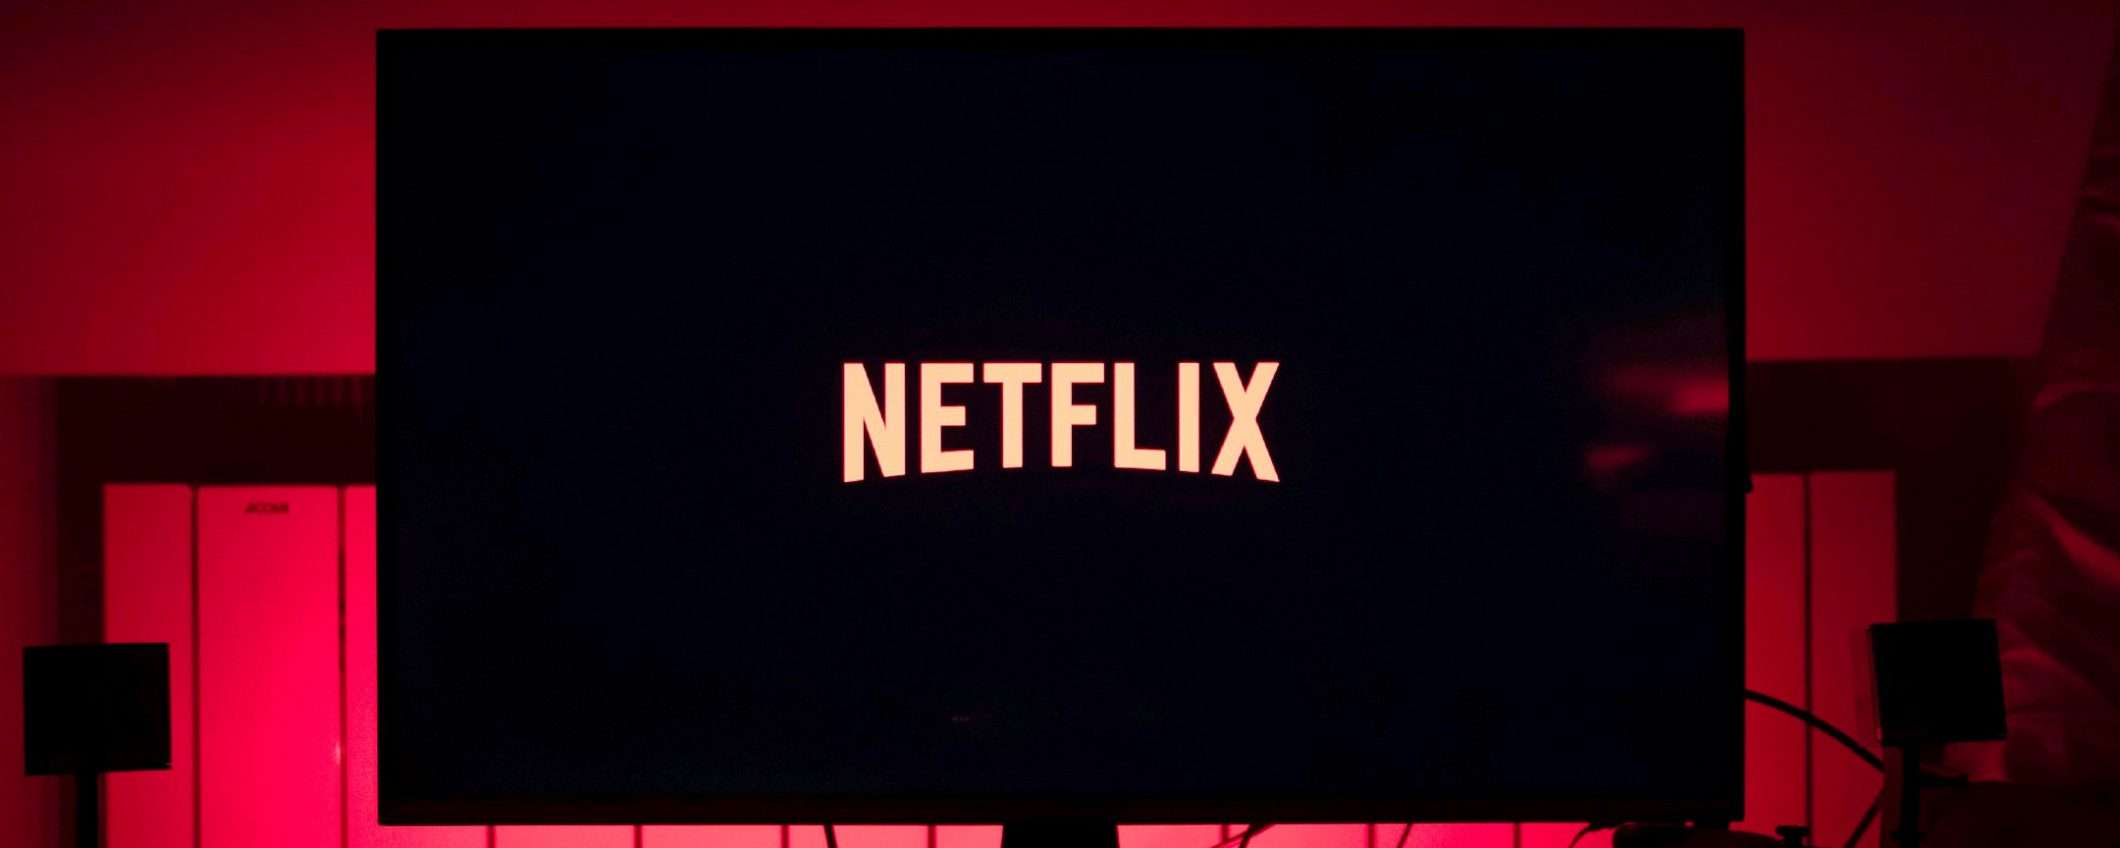 Netflix, prezzo in aumento ma non per tutti